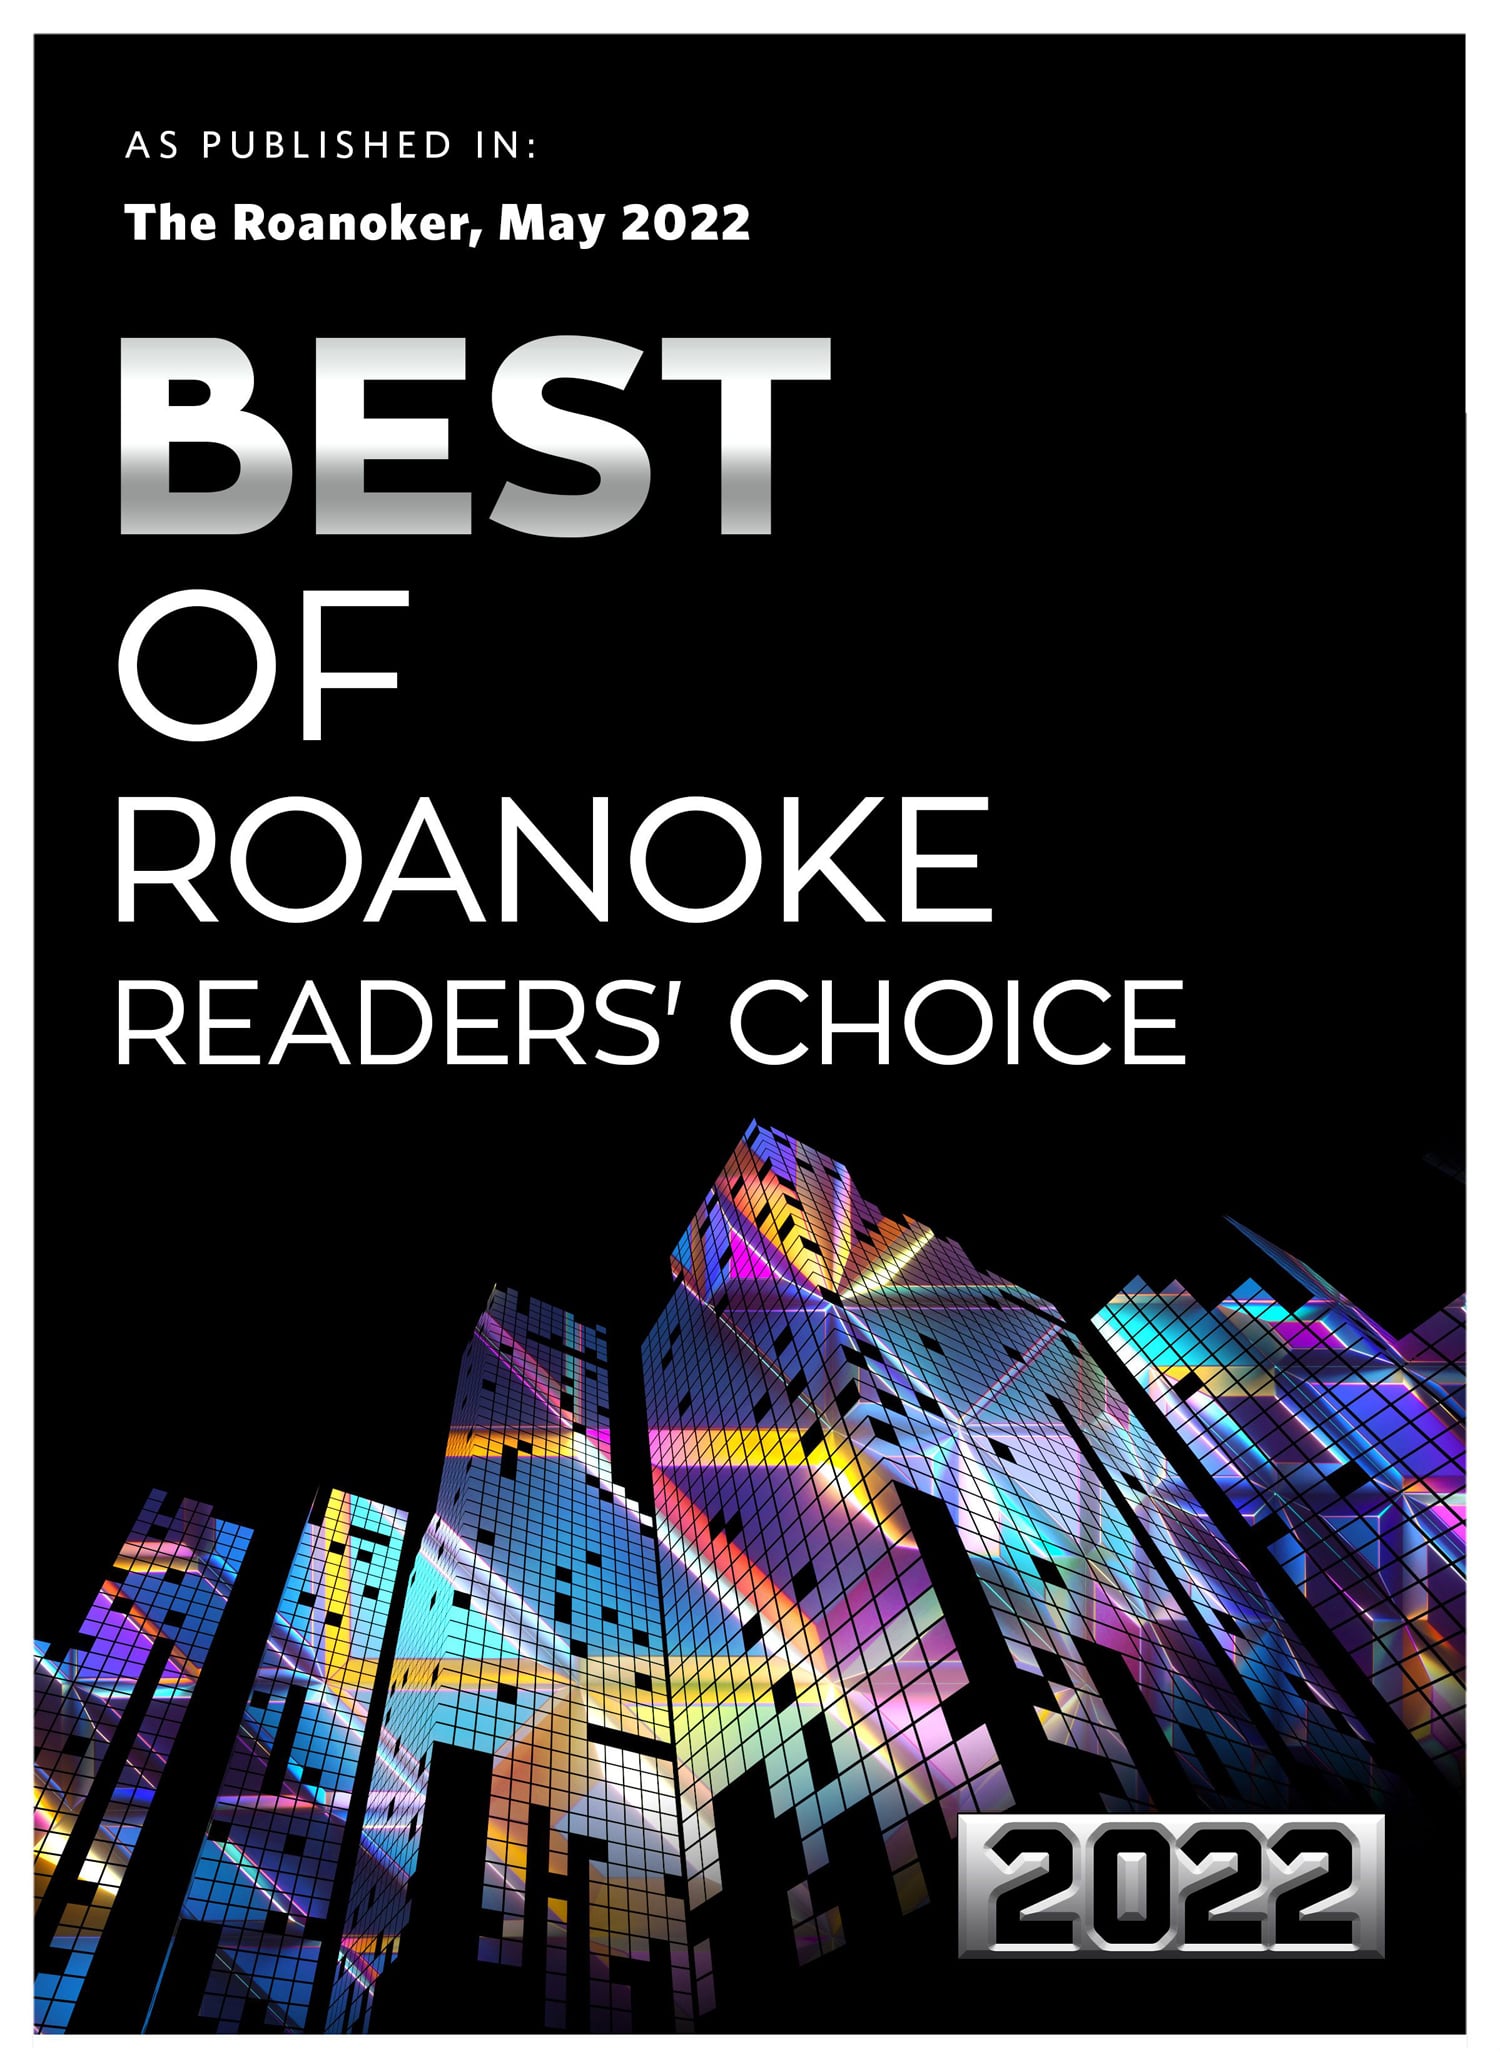 Best of Roanoke 2022 -Roanoker